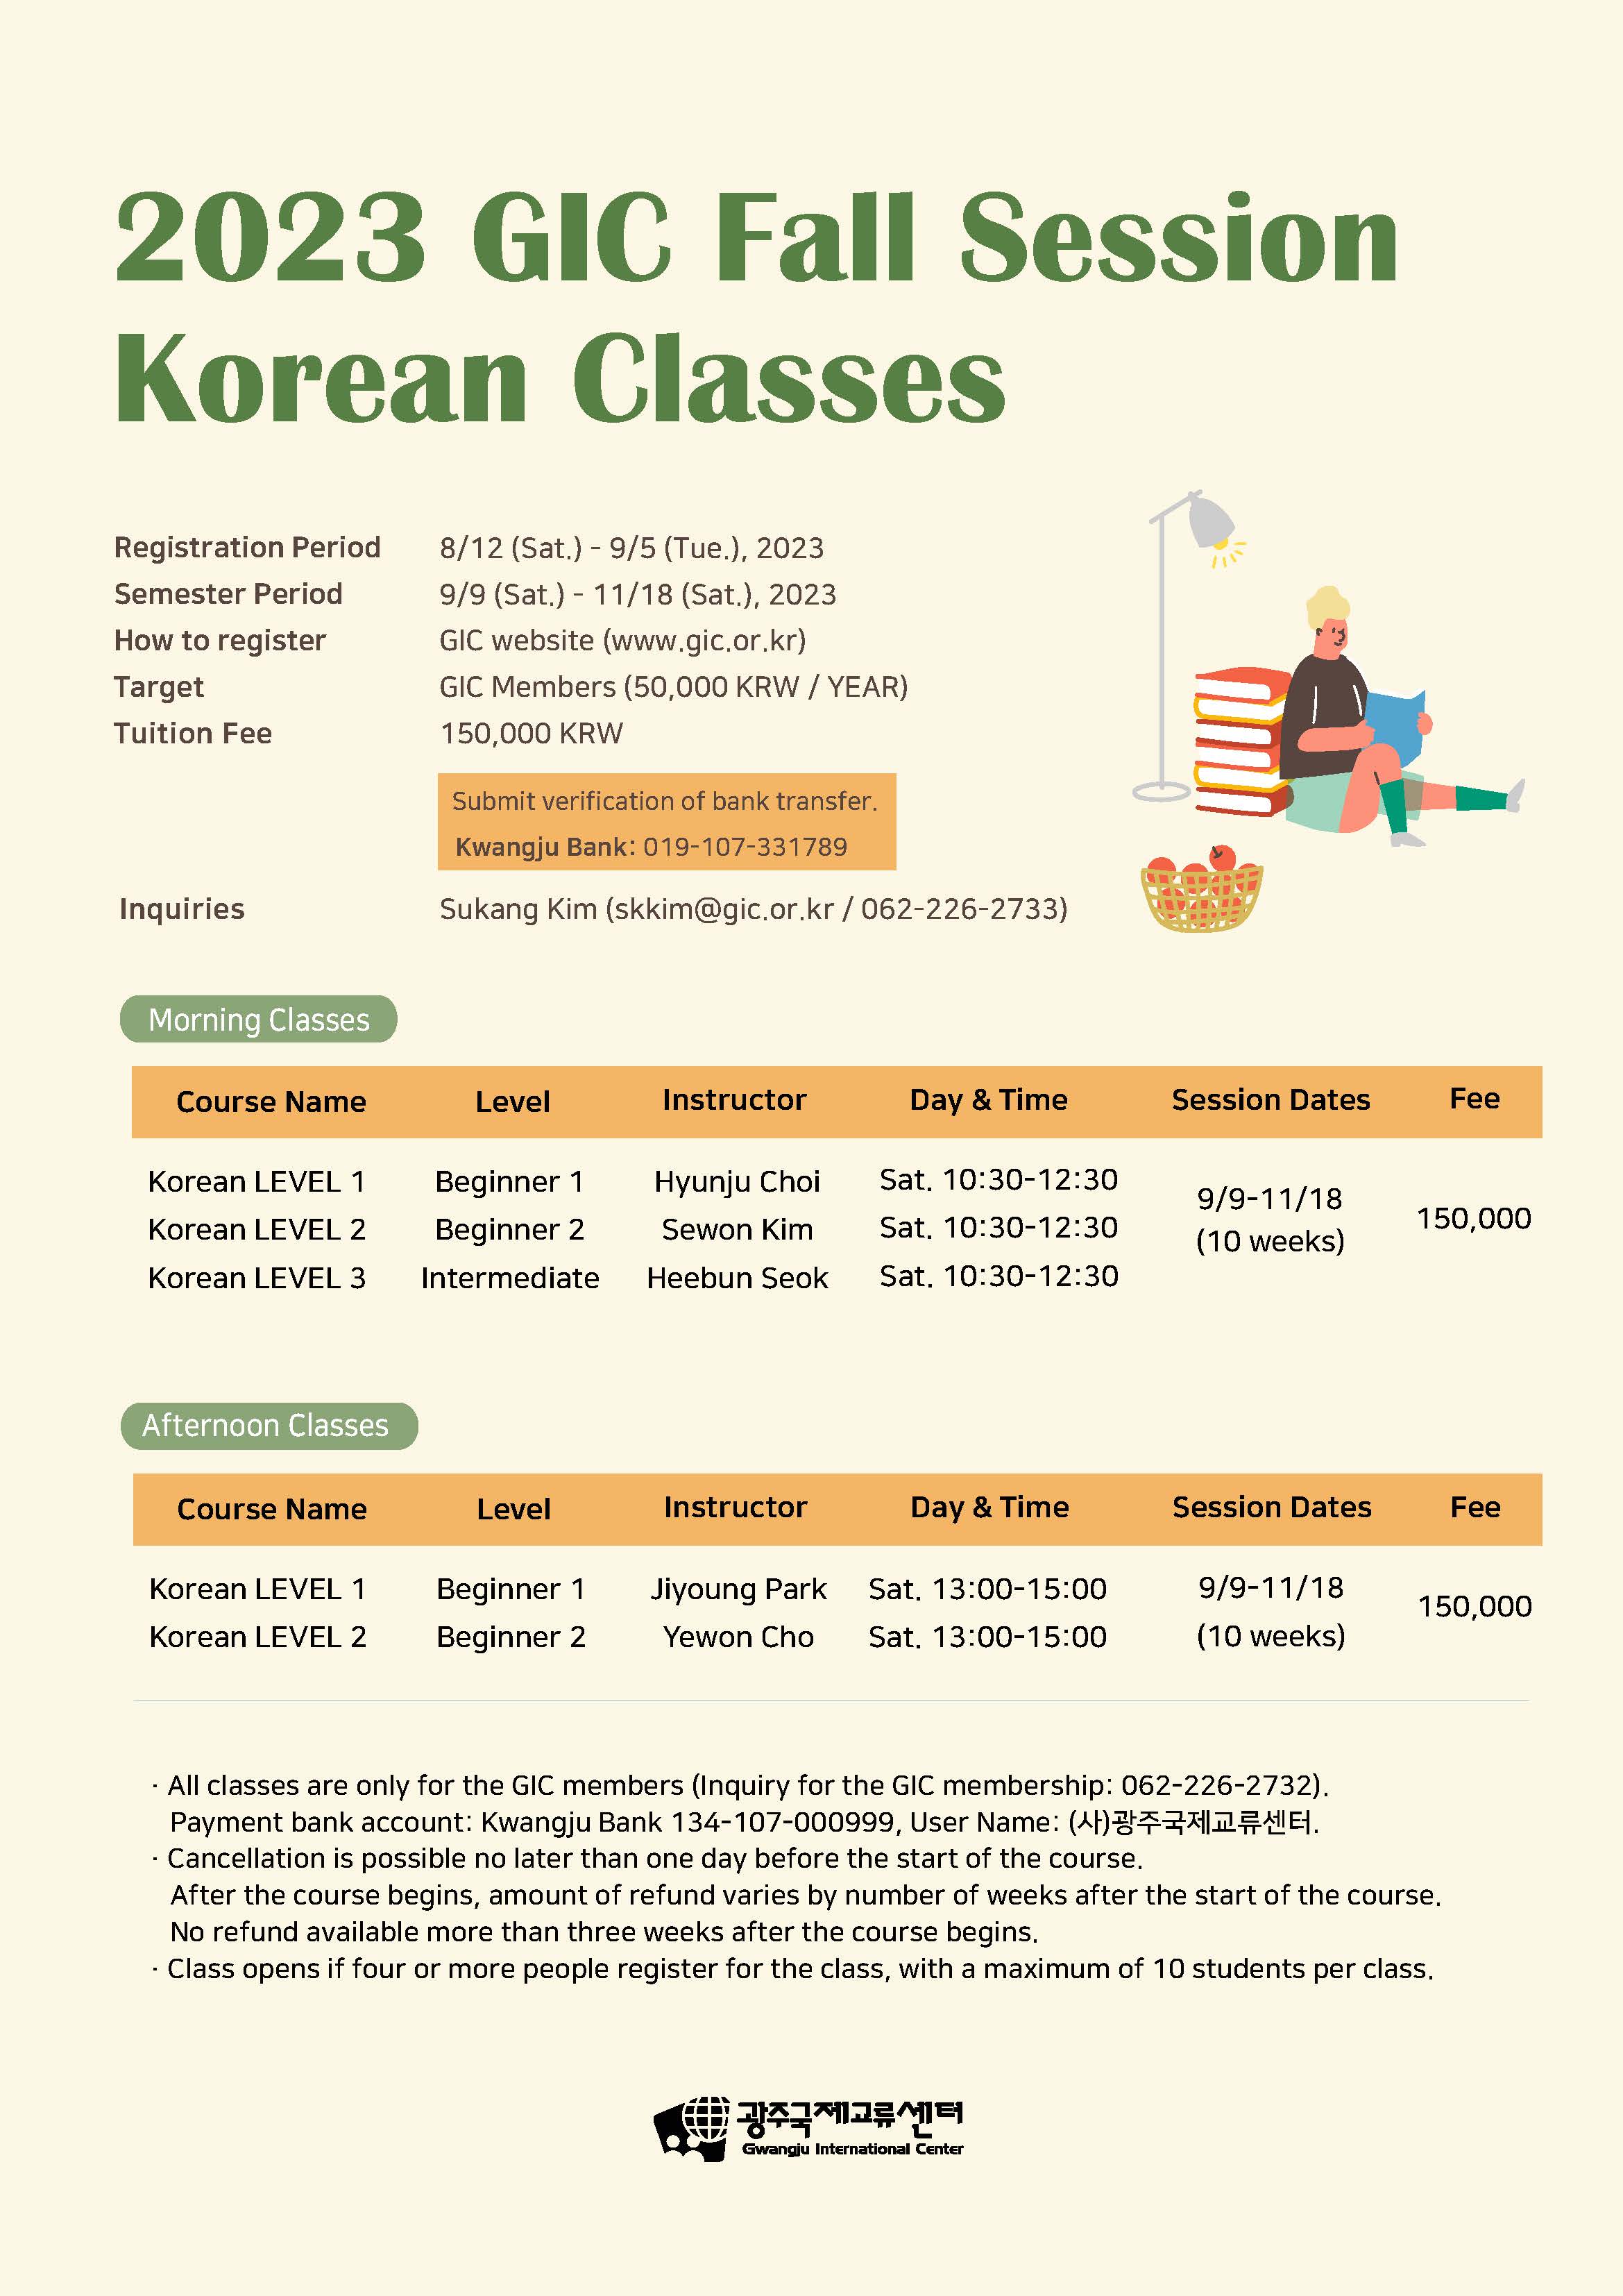 23_글로벌문화언어교실_포스터(가을학기)_EN_Only Koreanclasses_2.jpg